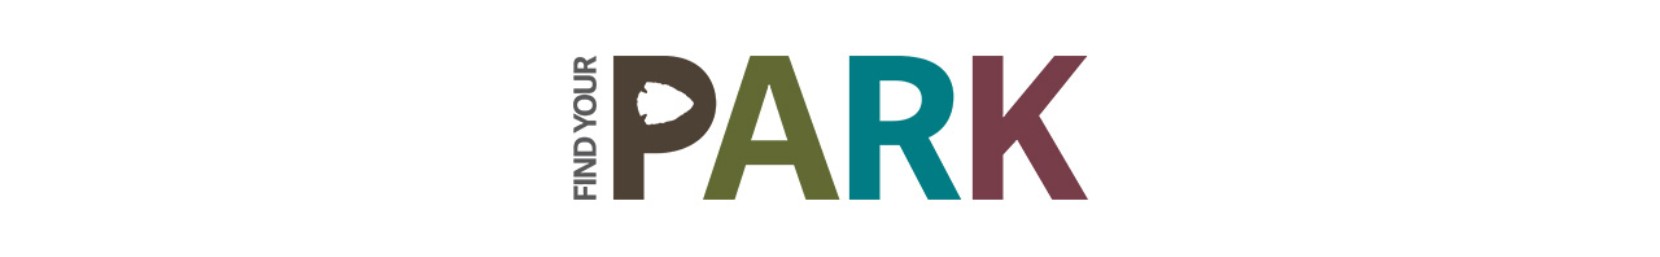 Find Your Park logo